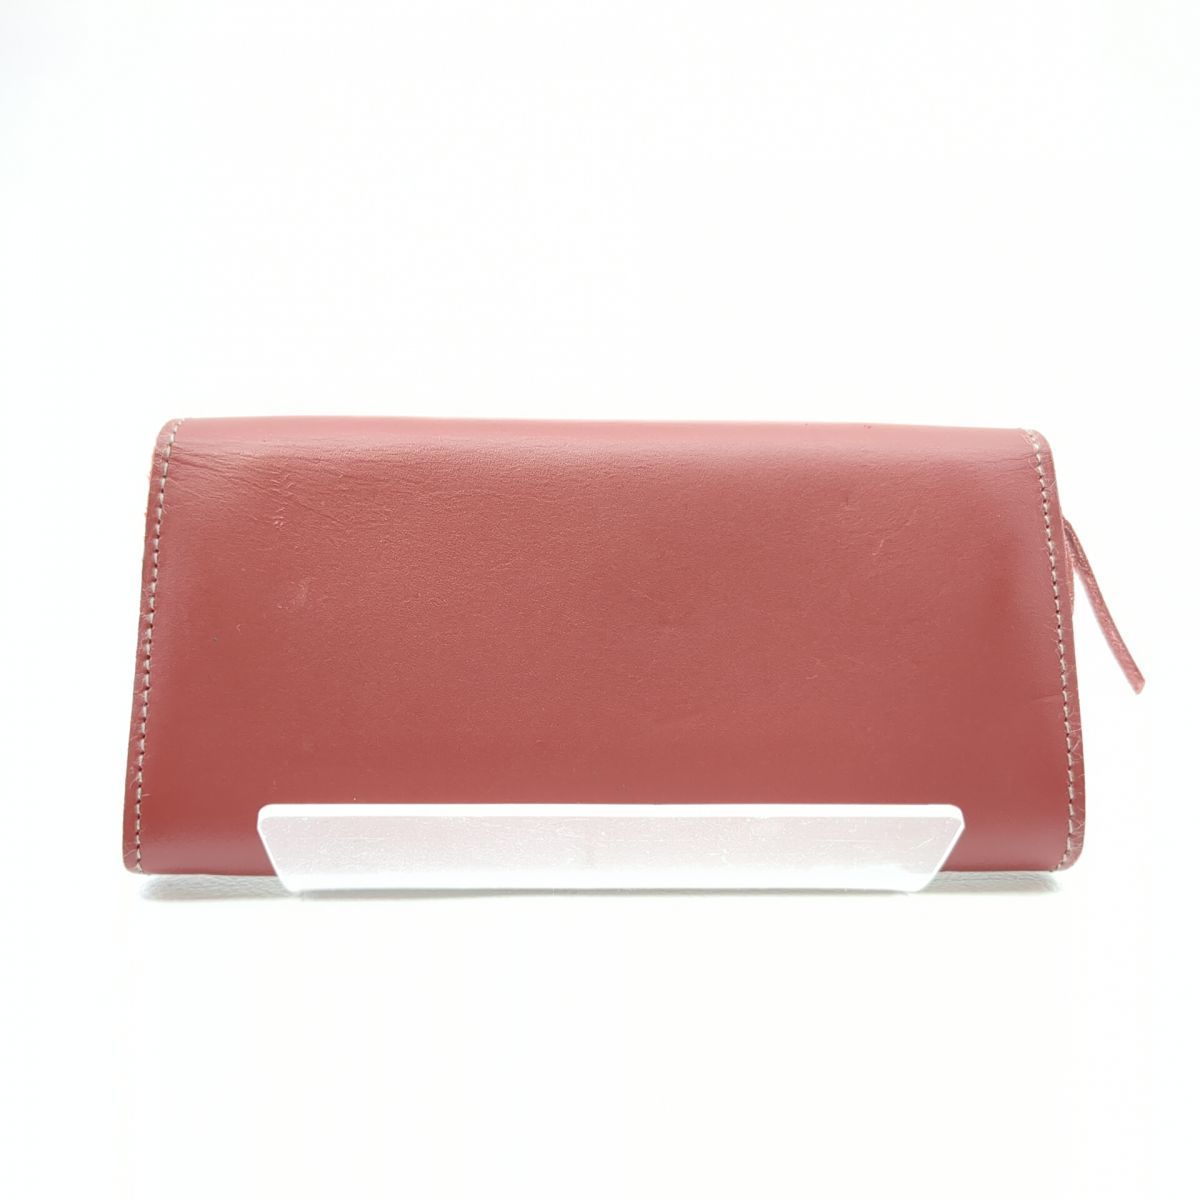  кожа . качественный продукт Brown кожа длинный бумажник длинный кошелек *3118/ Shizuoka Shimizu магазин 